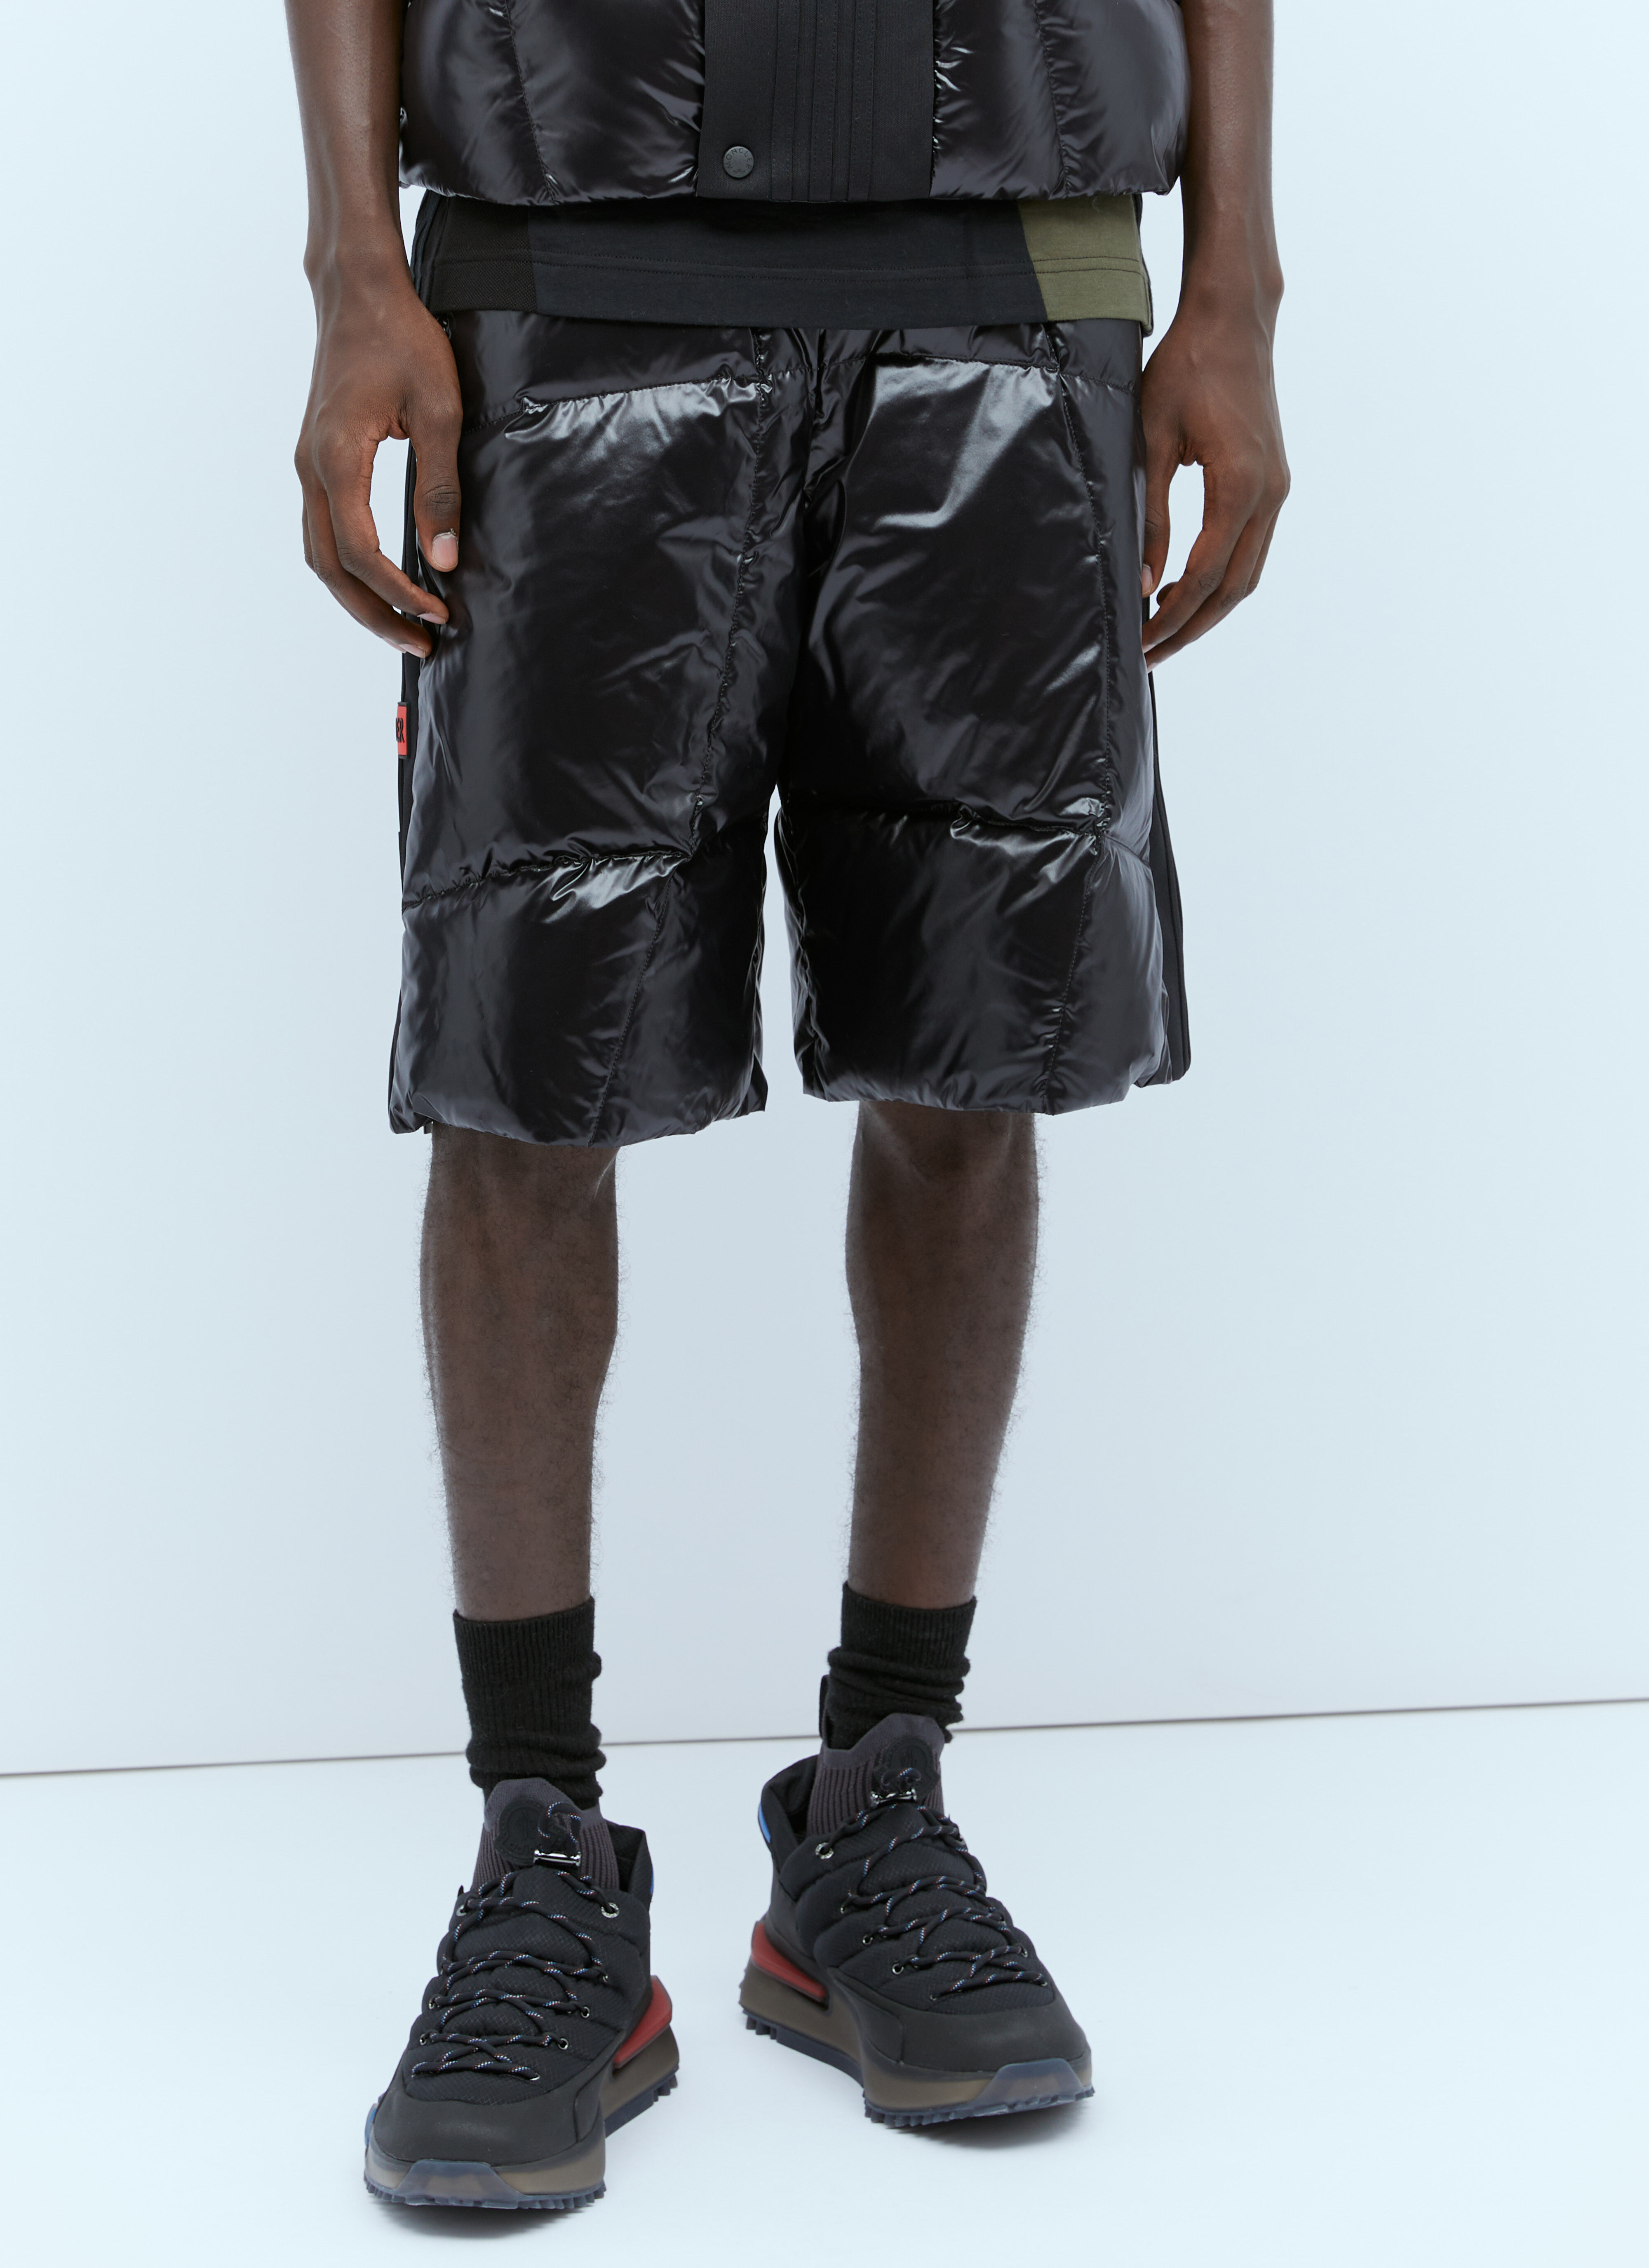 Moncler x adidas Originals 羽绒运动短裤 蓝色 mad0254005